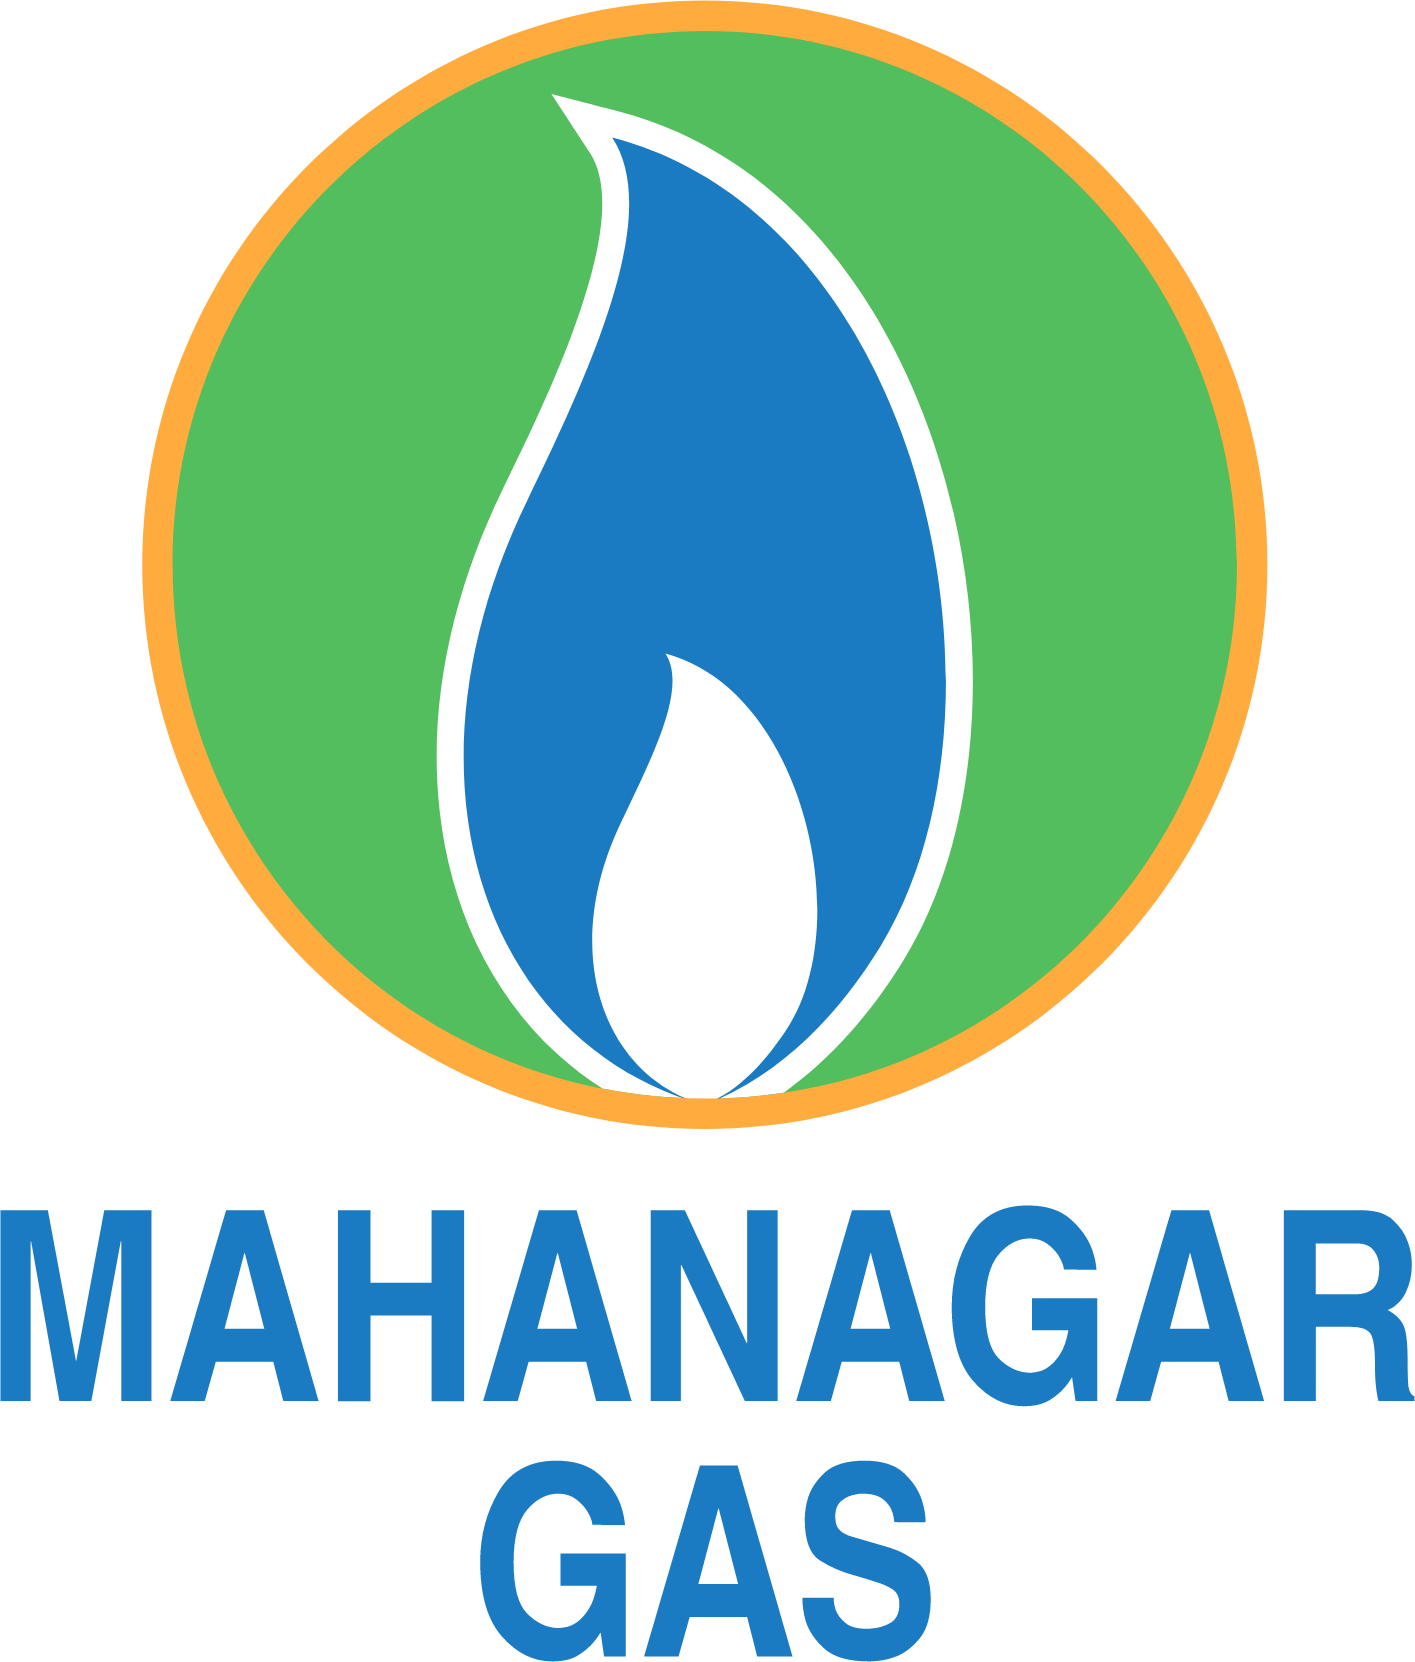 Mahanagar Gas logo large (transparent PNG)